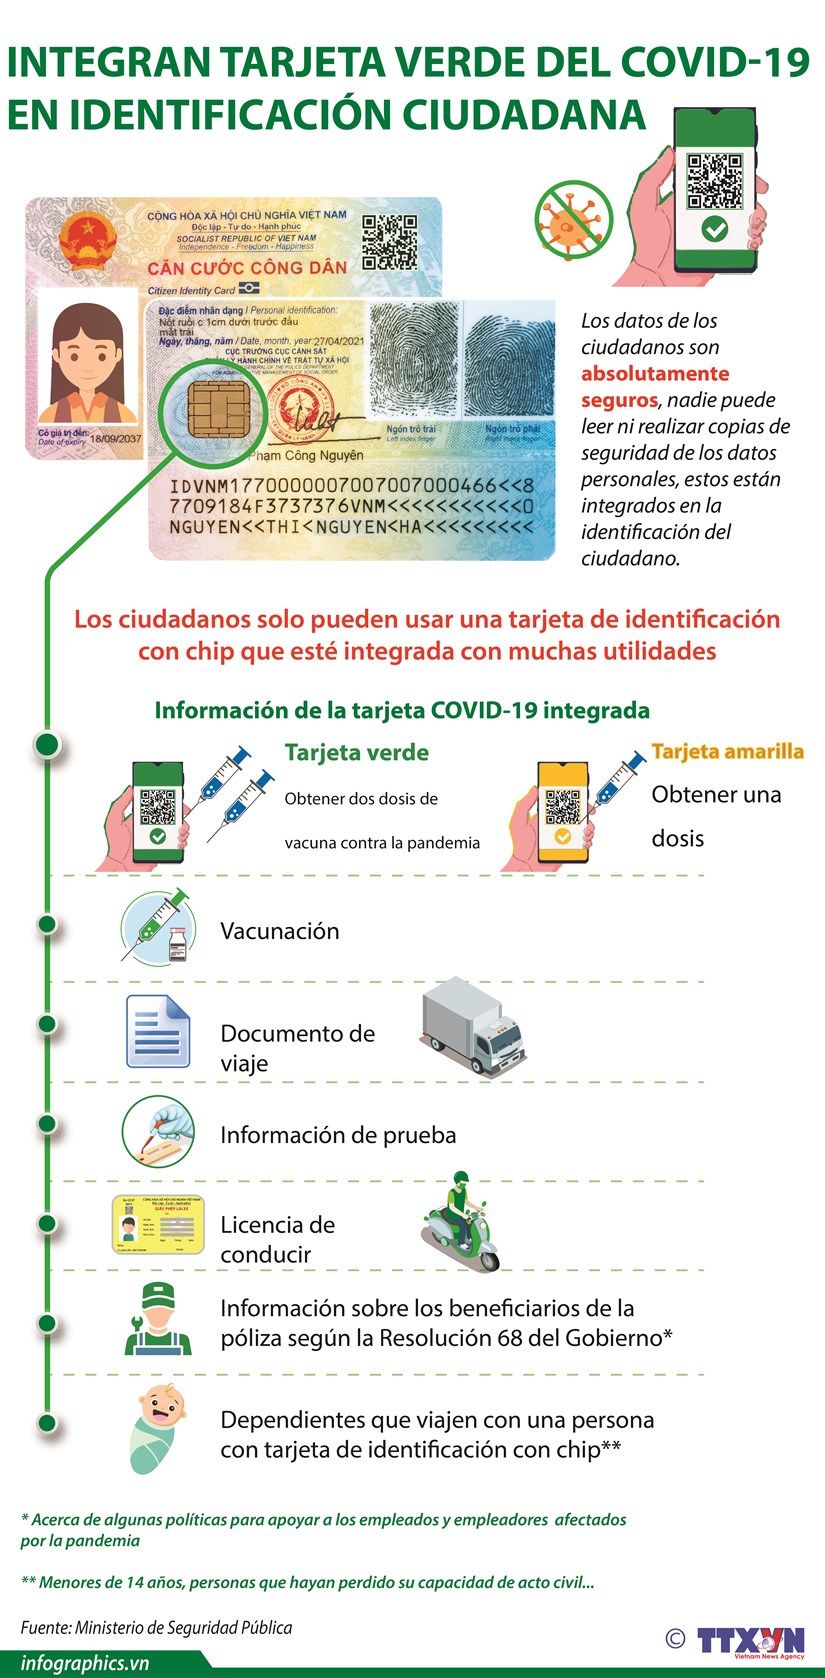 Integran tarjeta verde del COVID-19 en identificacion ciudadana hinh anh 1